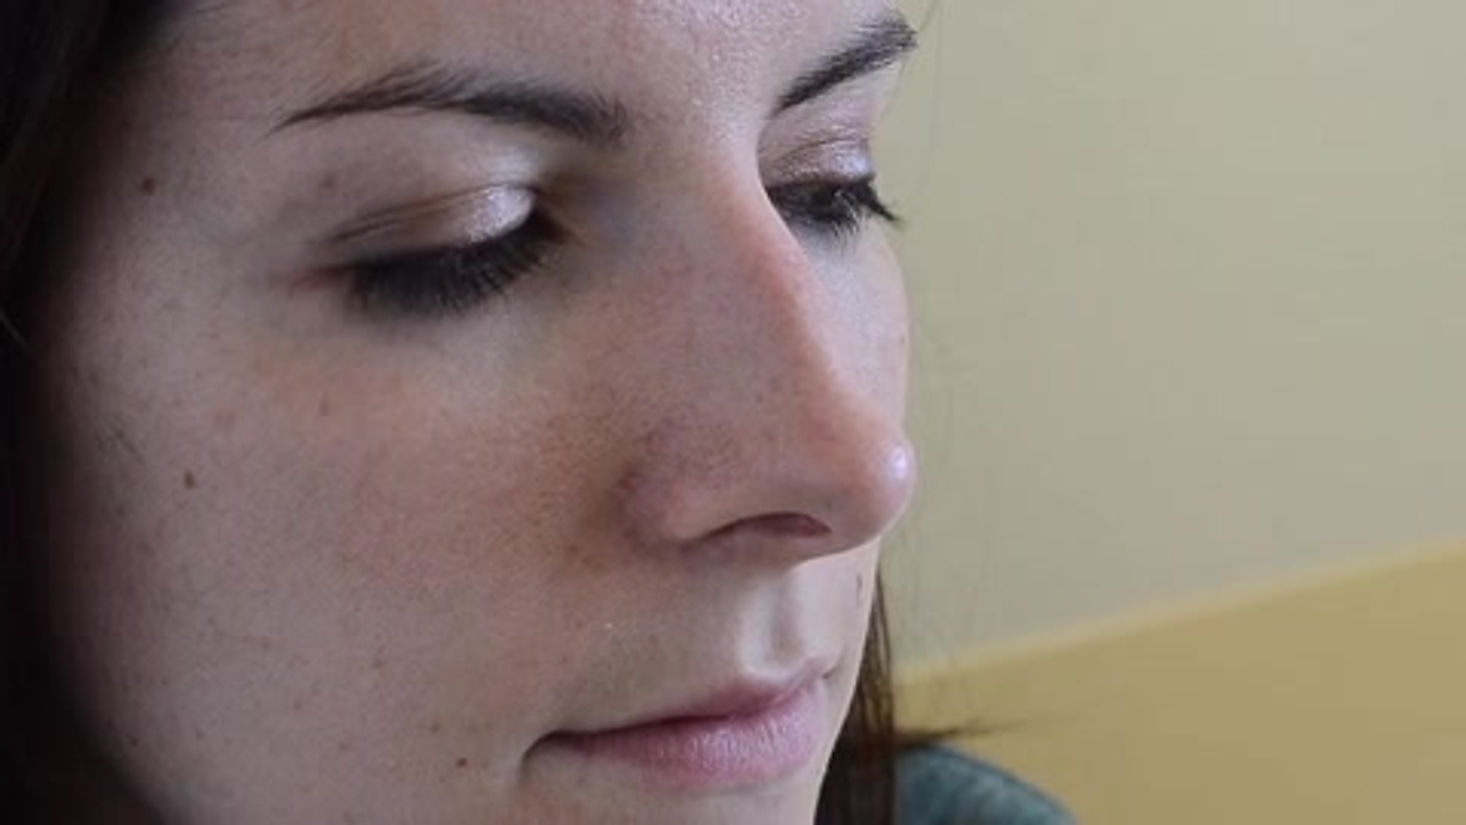 Test au miroir - recherche d'une obstruction nasale